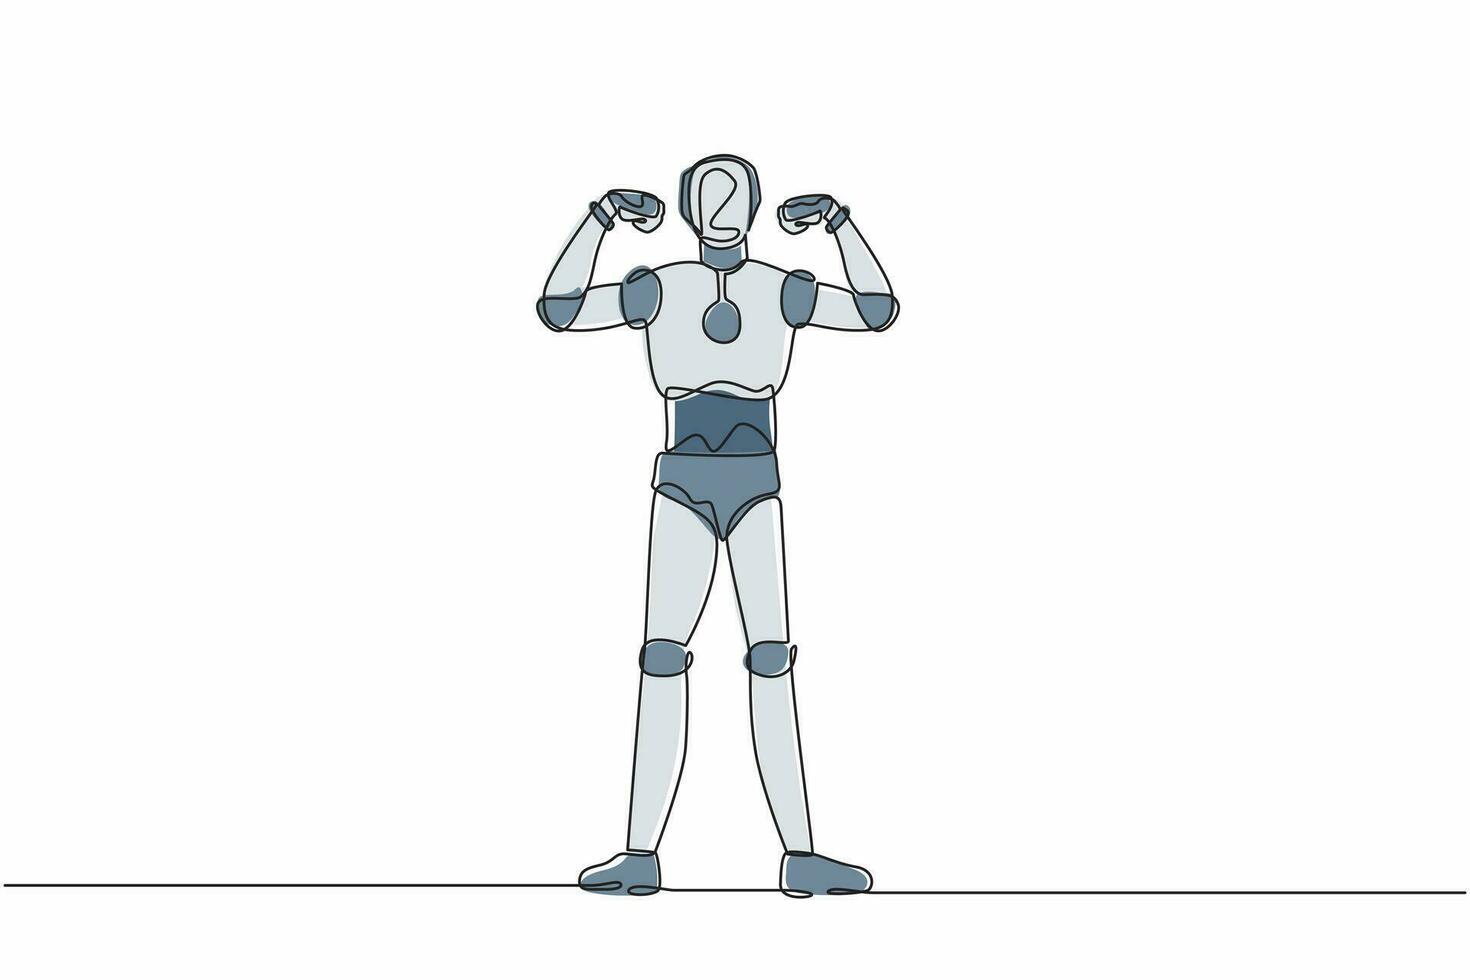 robot de dibujo continuo de una línea con gestos puño de dos manos hacia arriba. fuerte organismo cibernético robot humanoide. futuro concepto de desarrollo robótico. ilustración gráfica de vector de diseño de dibujo de una sola línea